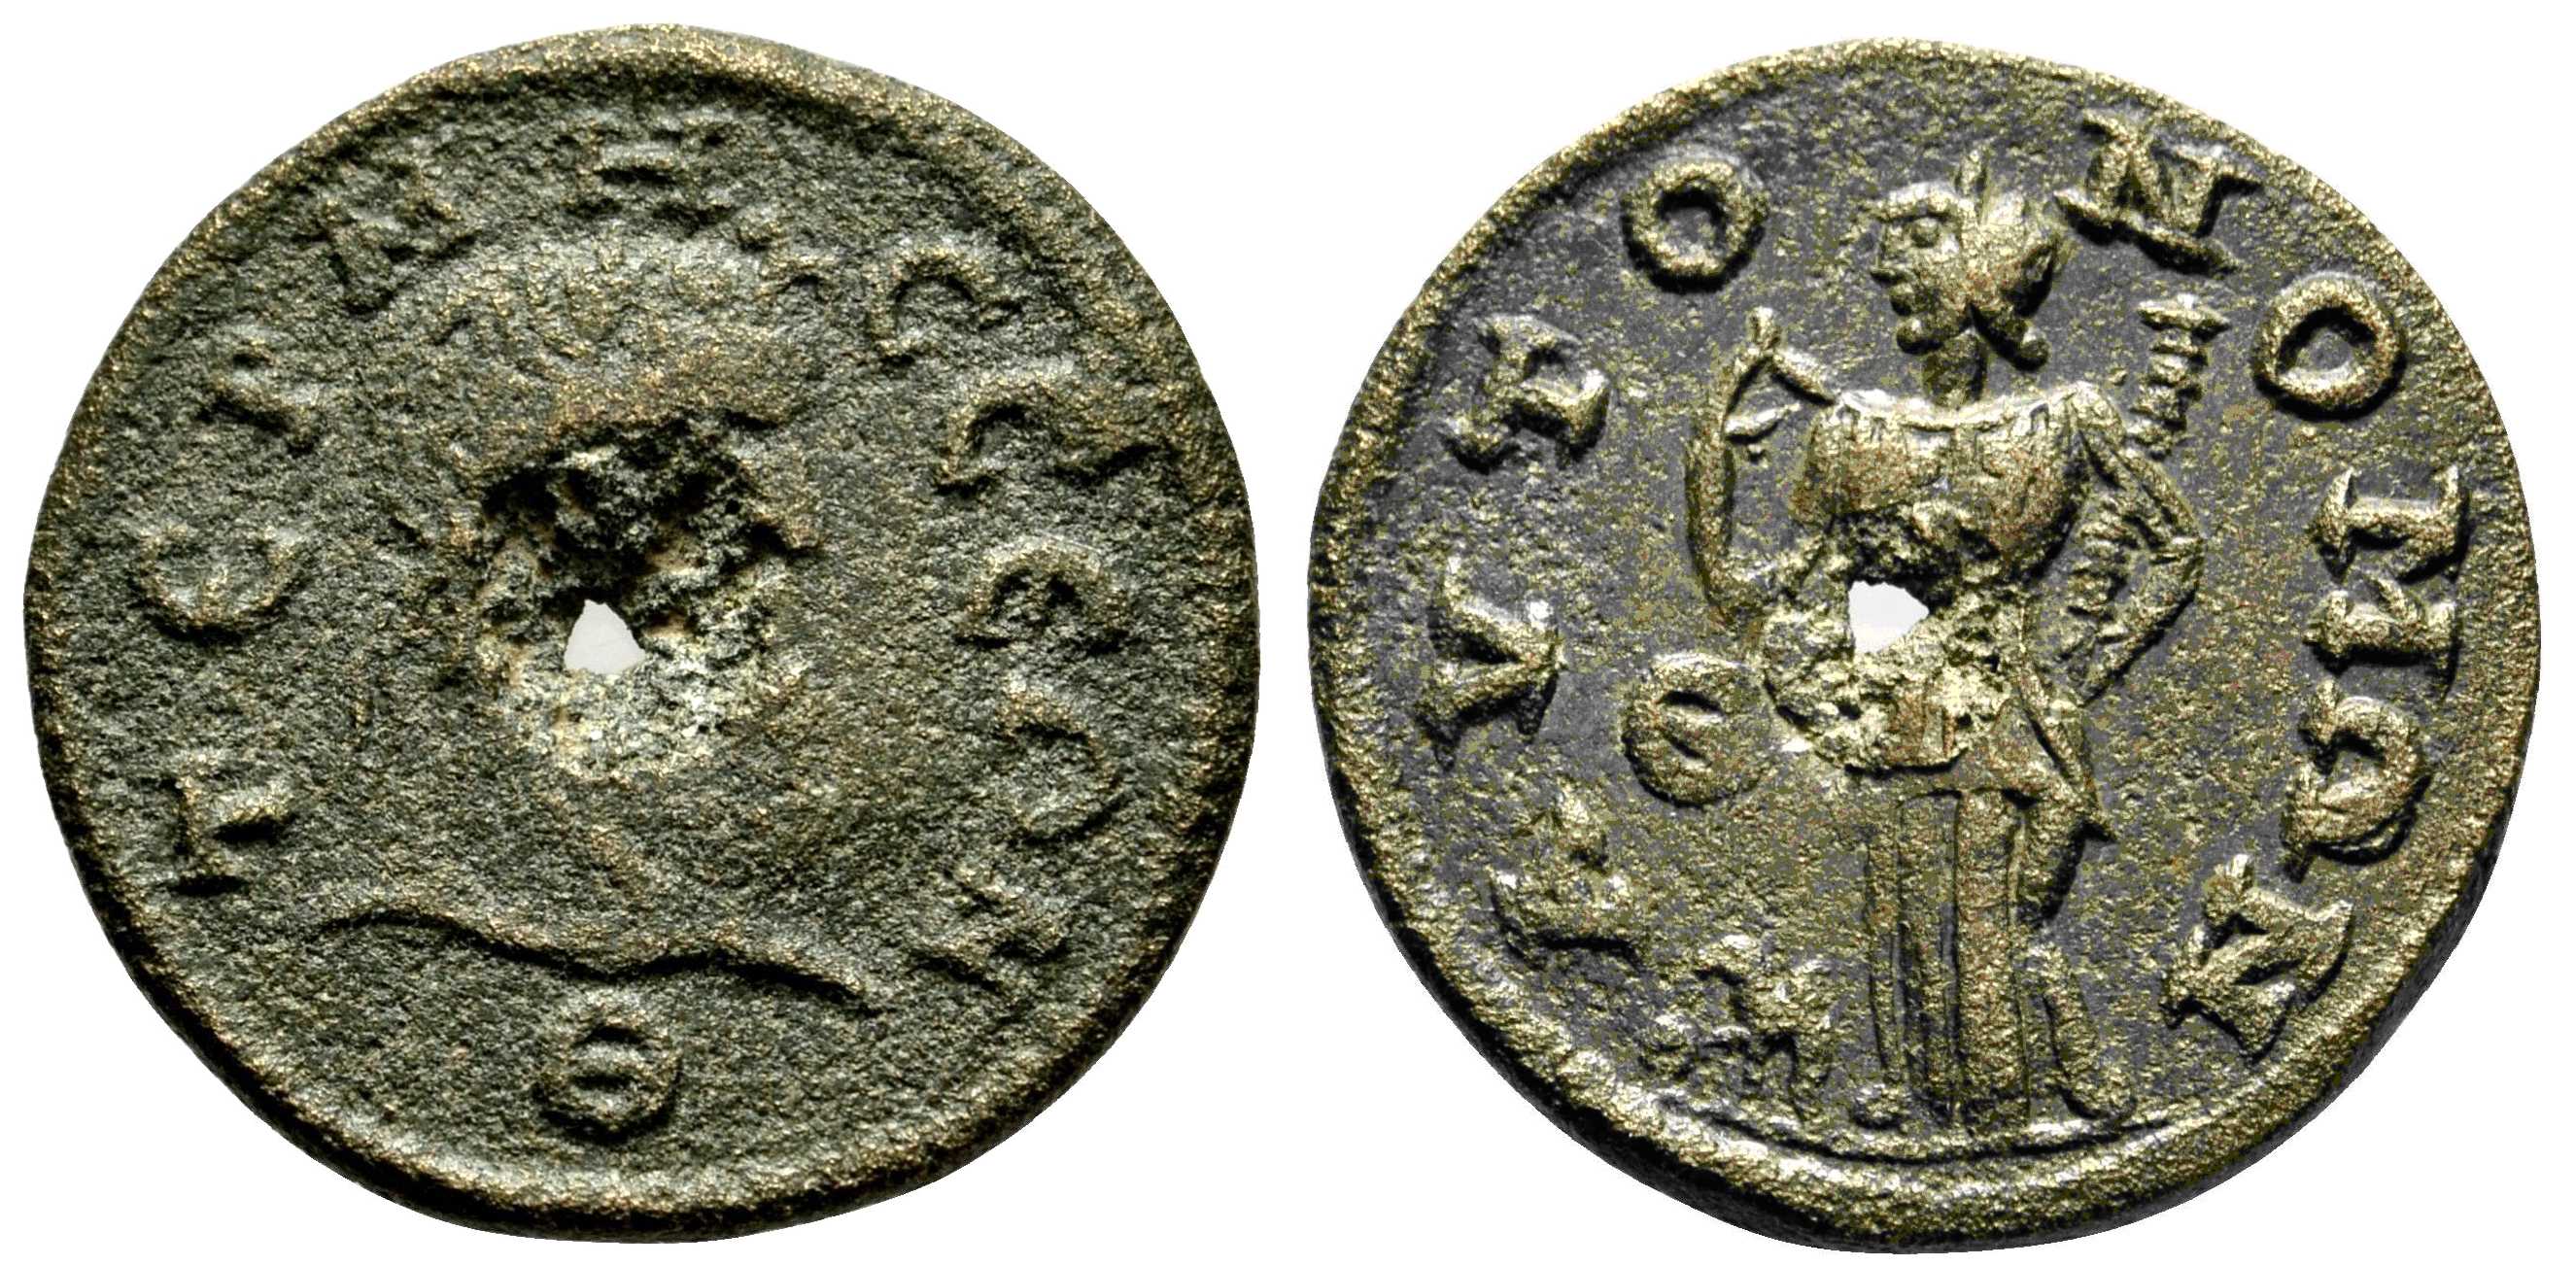 6056 Termessus Pisidia Dominium Romanum AE